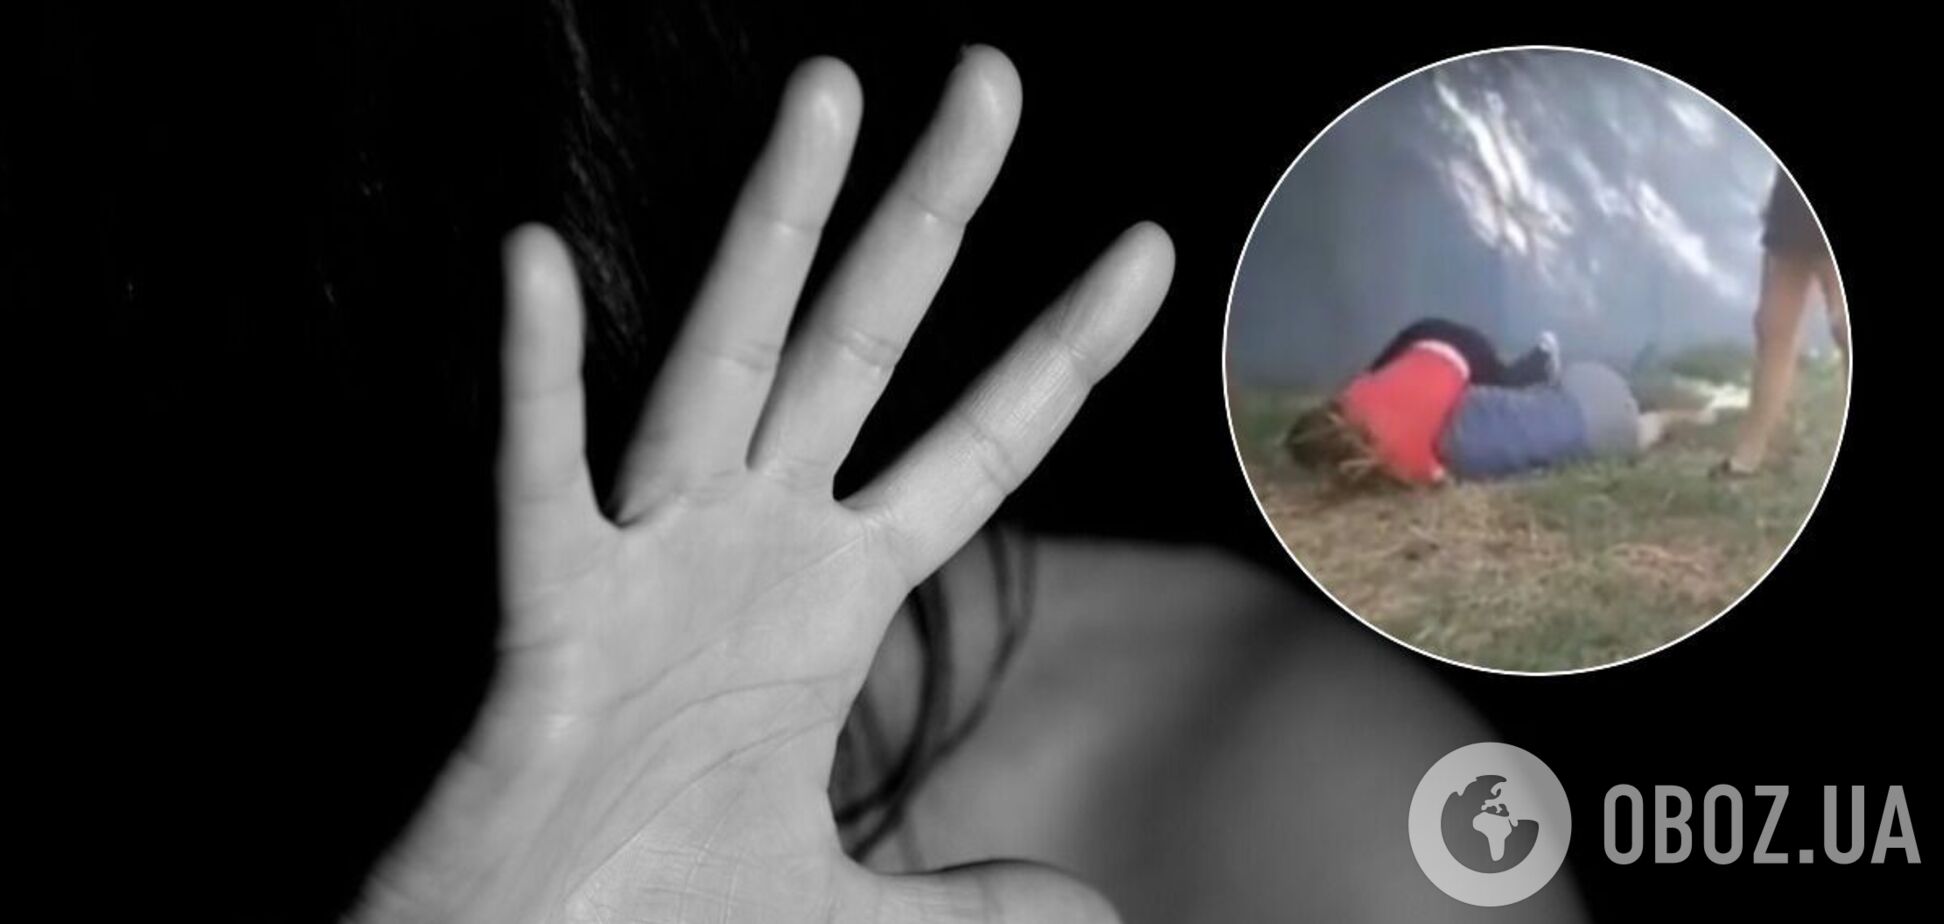 В Никополе девочки-подростки жестоко избили школьницу. Видео 18+